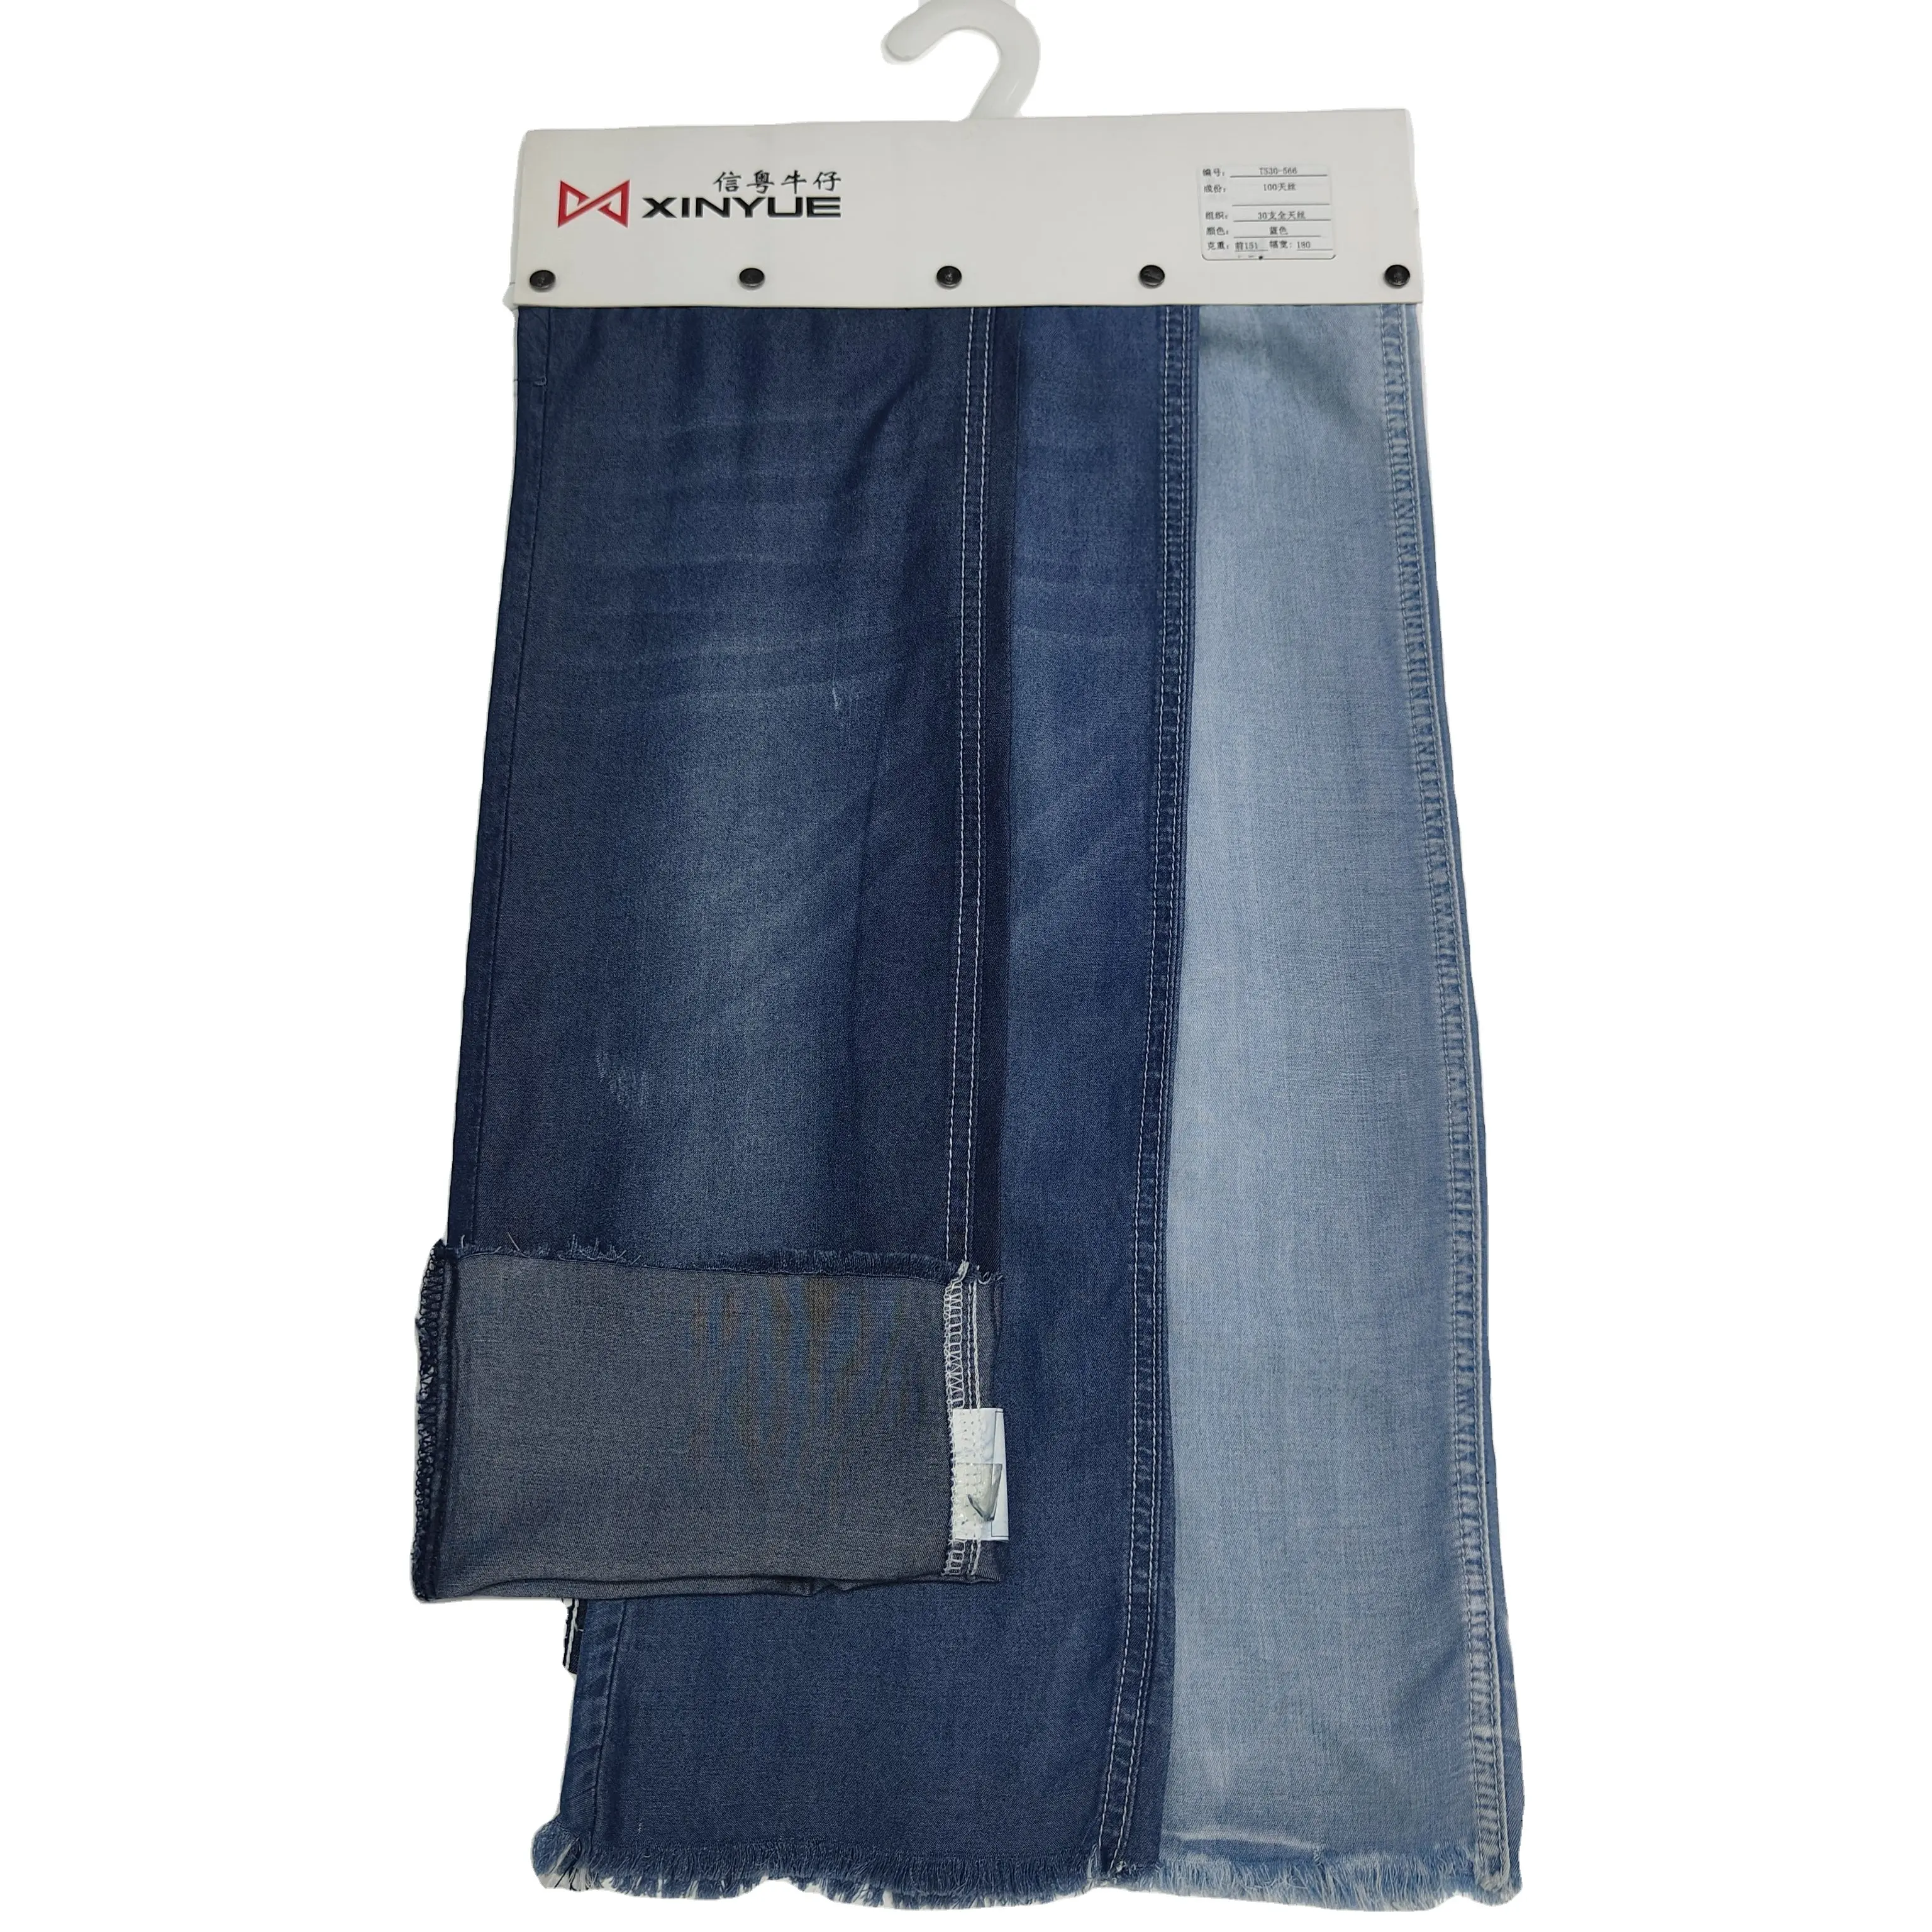 قماش جينز مطاطي أنيق مصنوع من نسيج قطني من البوليستر والسطح الواسع من قماش الدنيم ذو فتحات مقلمة للبيع بالجملة